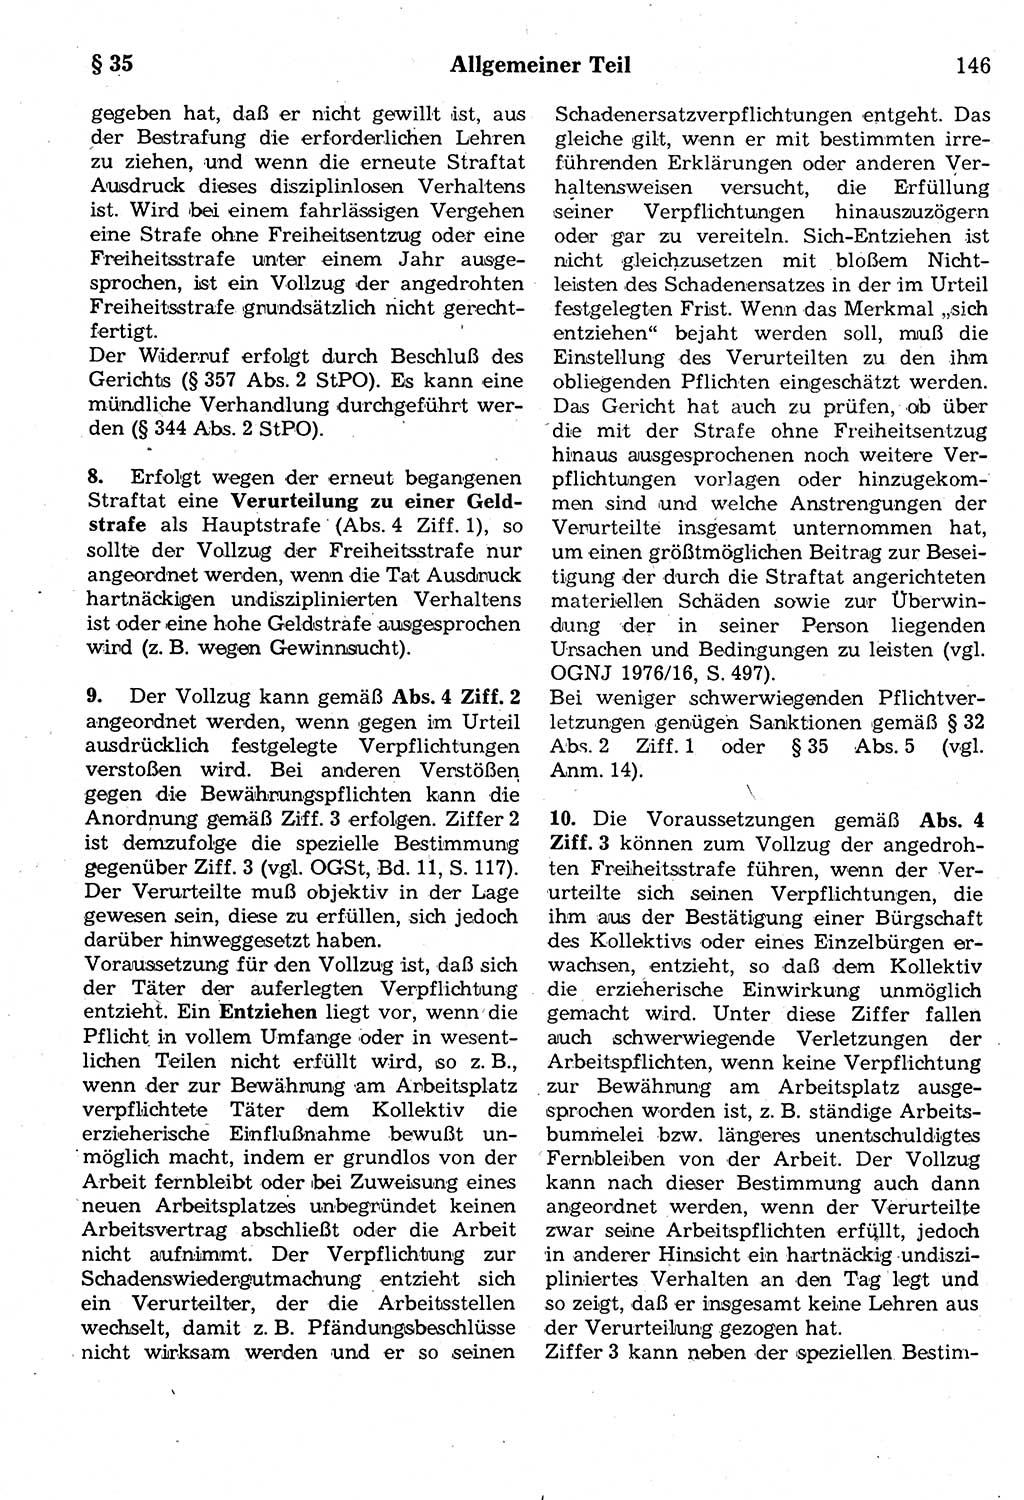 Strafrecht der Deutschen Demokratischen Republik (DDR), Kommentar zum Strafgesetzbuch (StGB) 1987, Seite 146 (Strafr. DDR Komm. StGB 1987, S. 146)